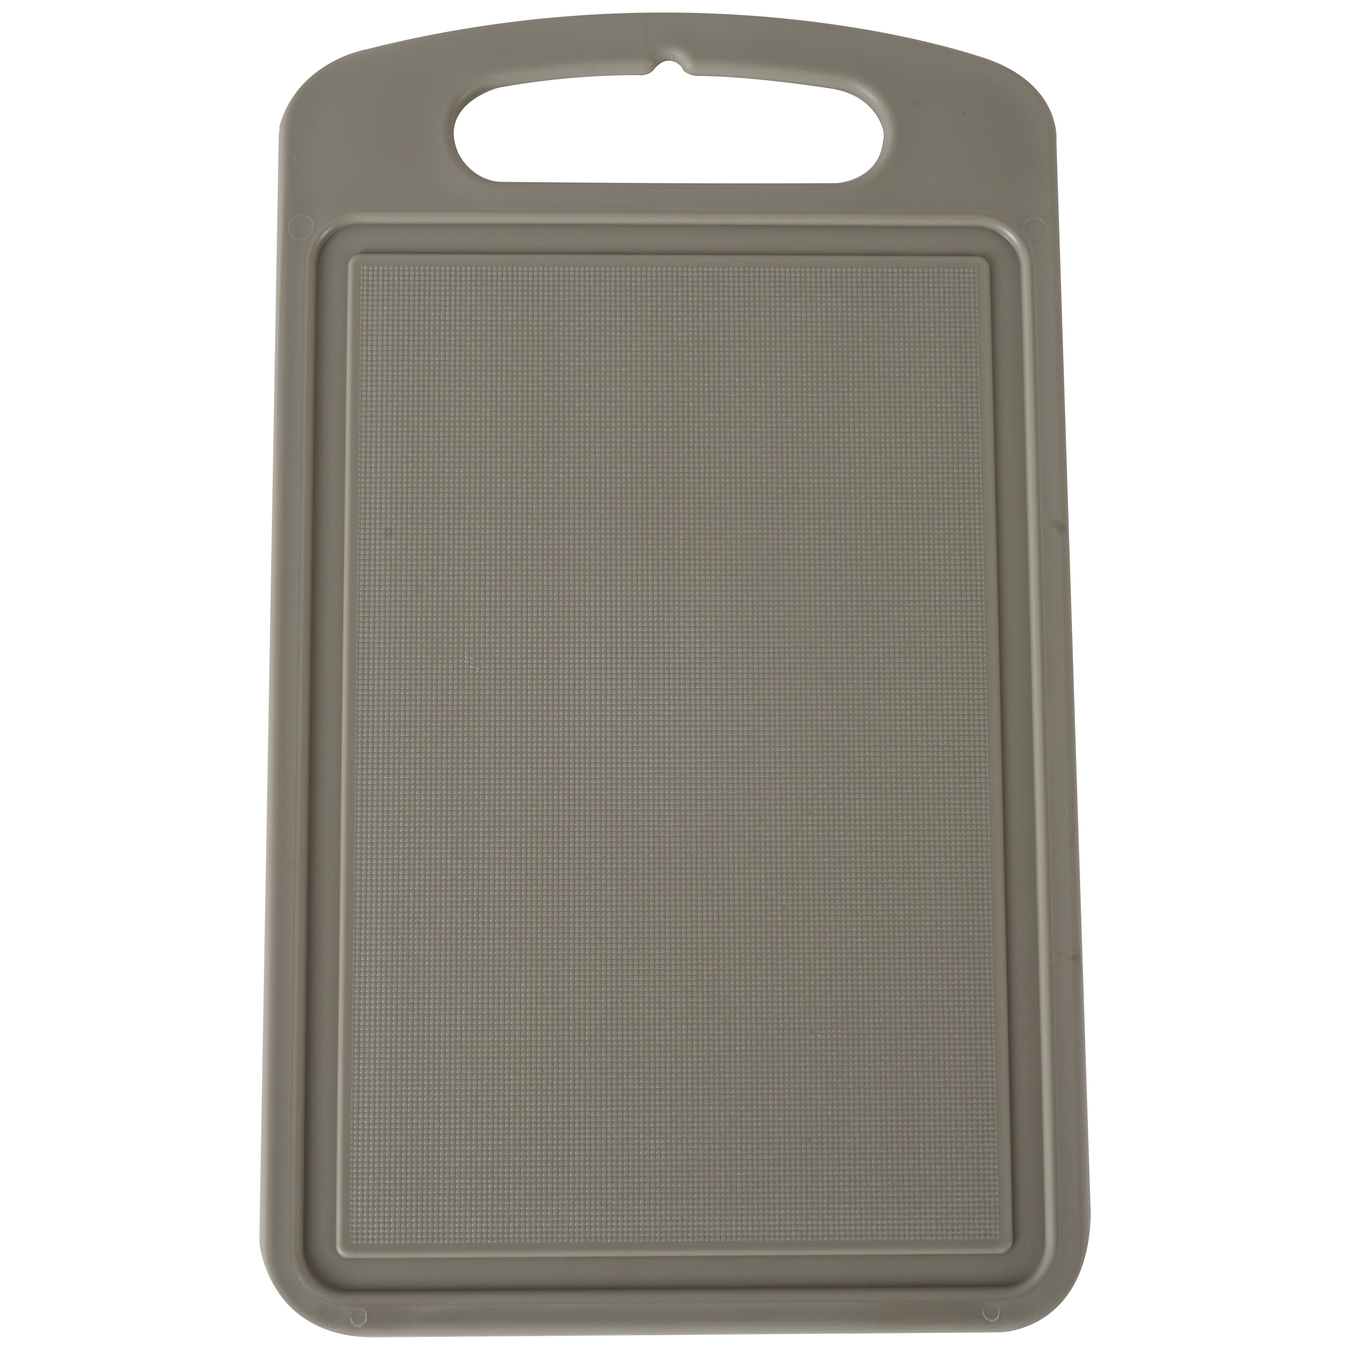 Aleana cutting board gray 25*15 cm 2